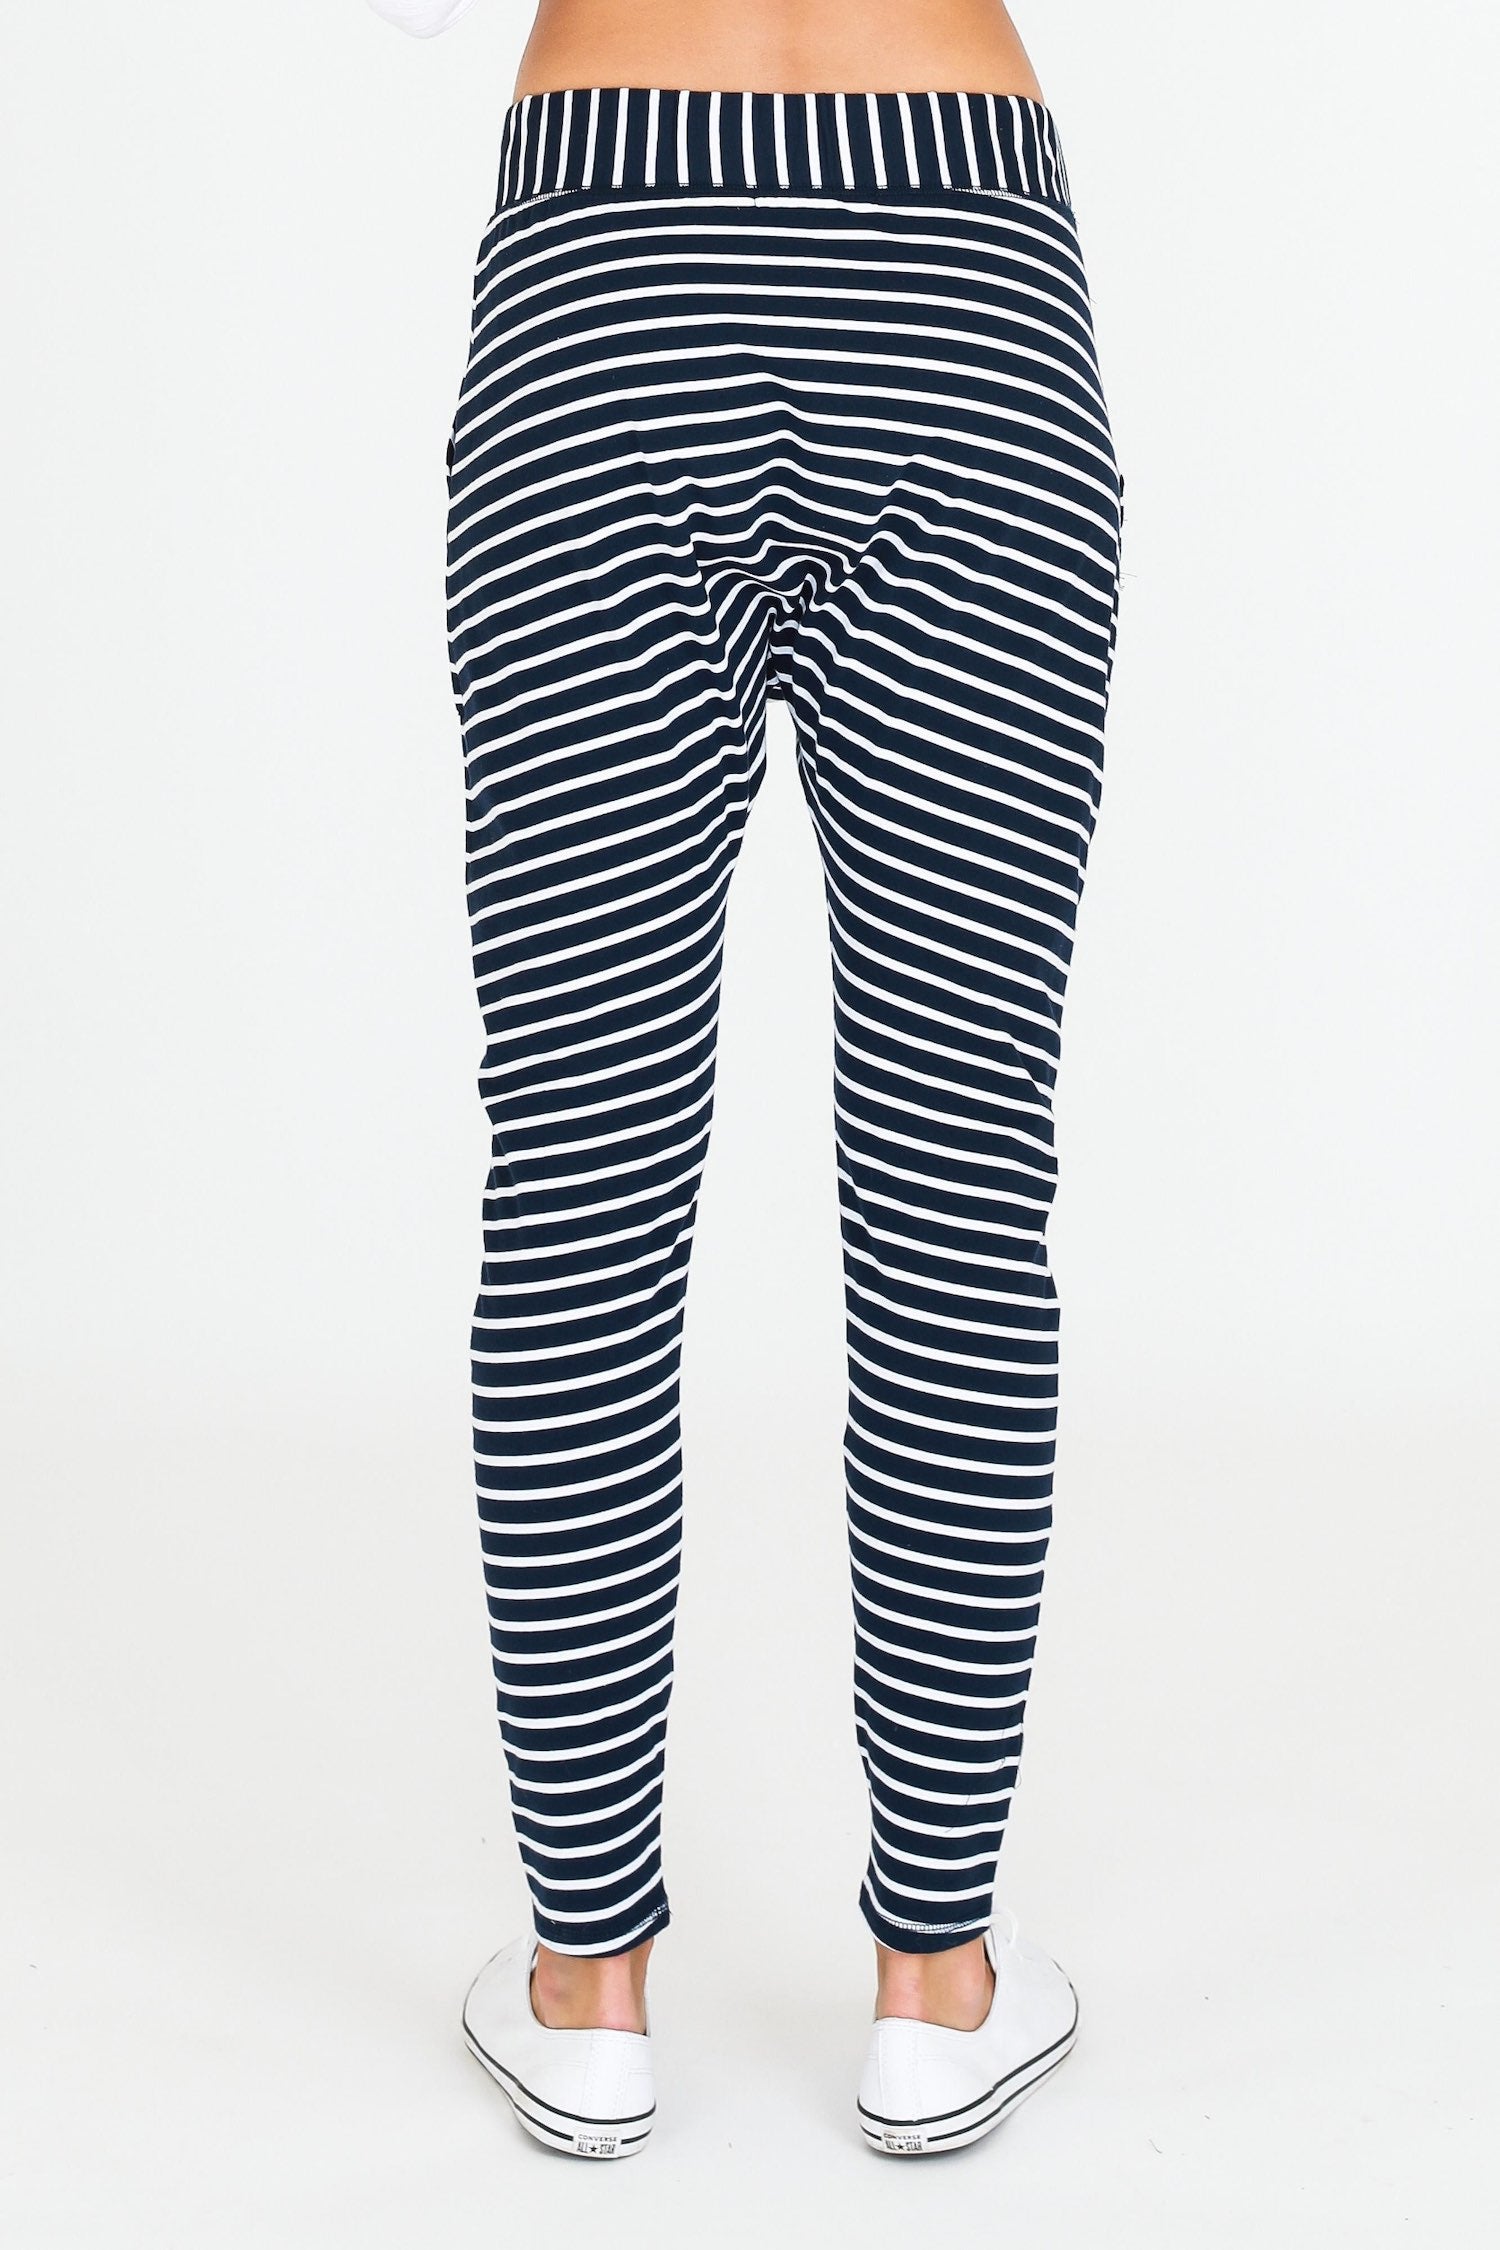 Fashion Low Drop Crotch Harem Pants| Alibaba.com